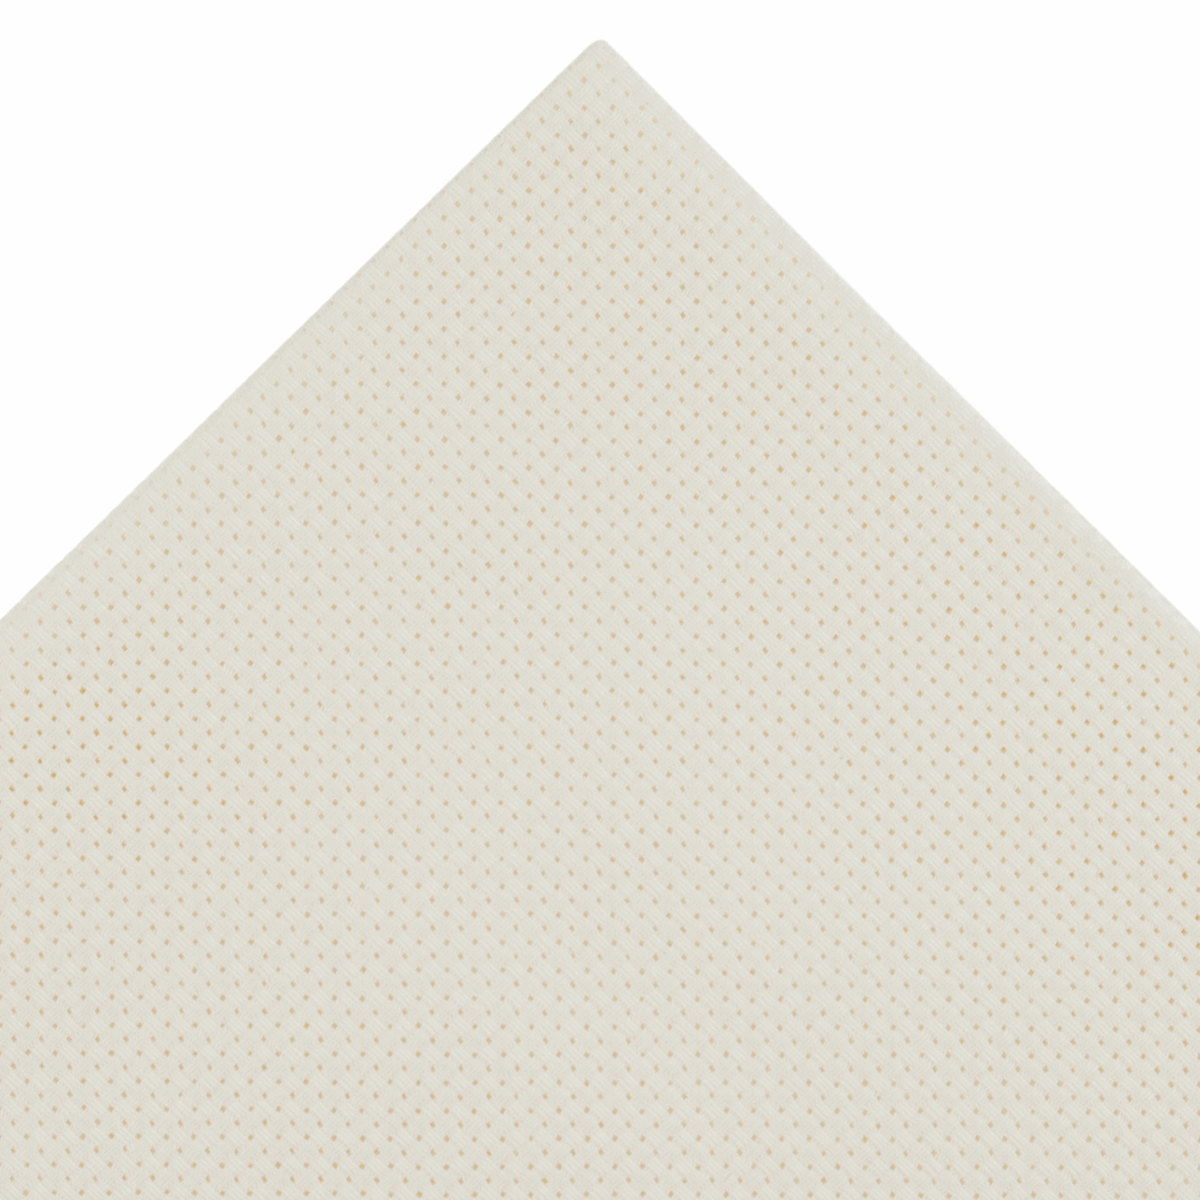 Trimits Cream Needlecraft Fabric - Aida 11 Count 45 x 30cm